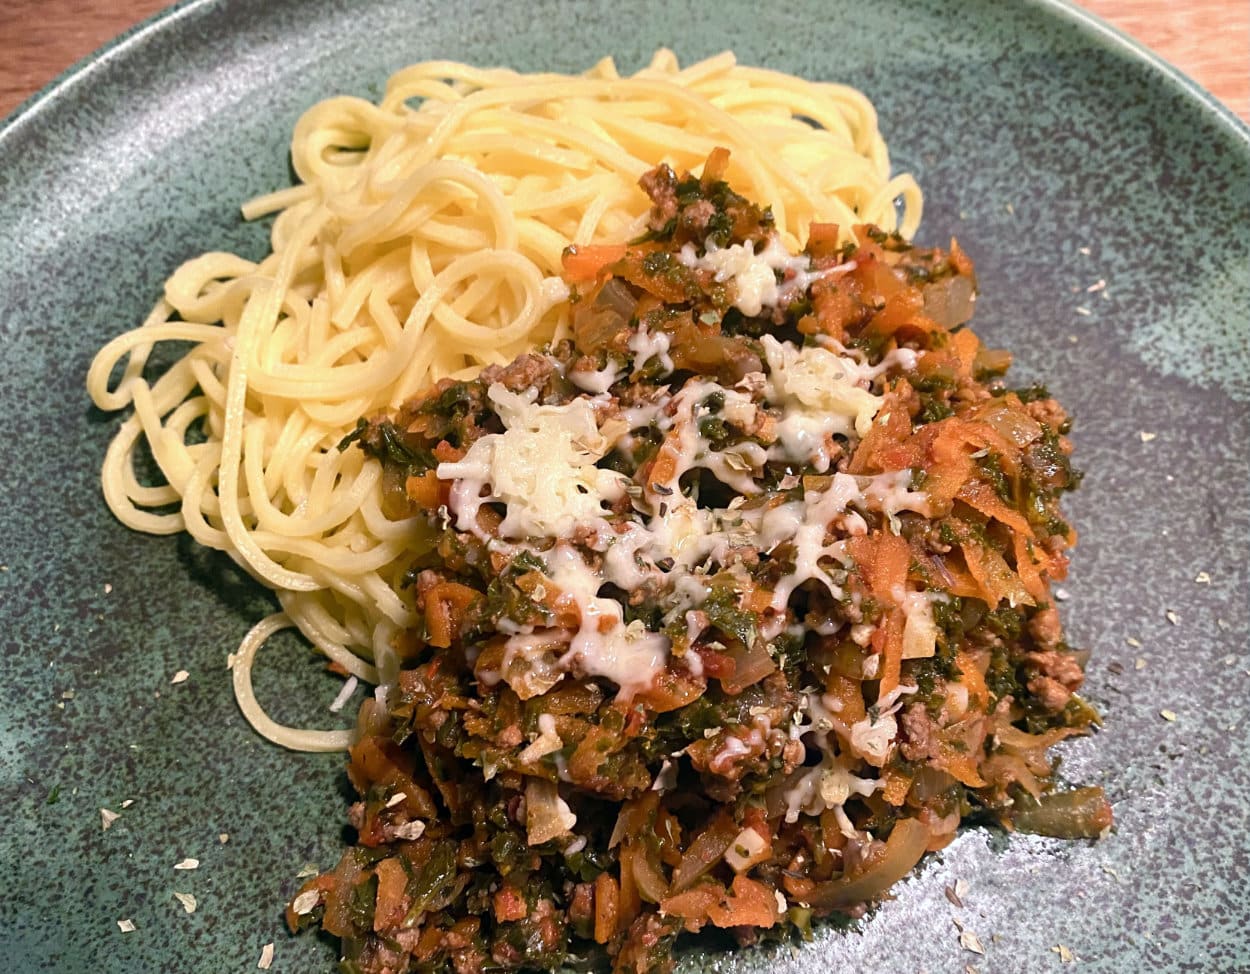 Opskrift: Spaghetti bolognese med grønkål (sund pasta med kødsovs)